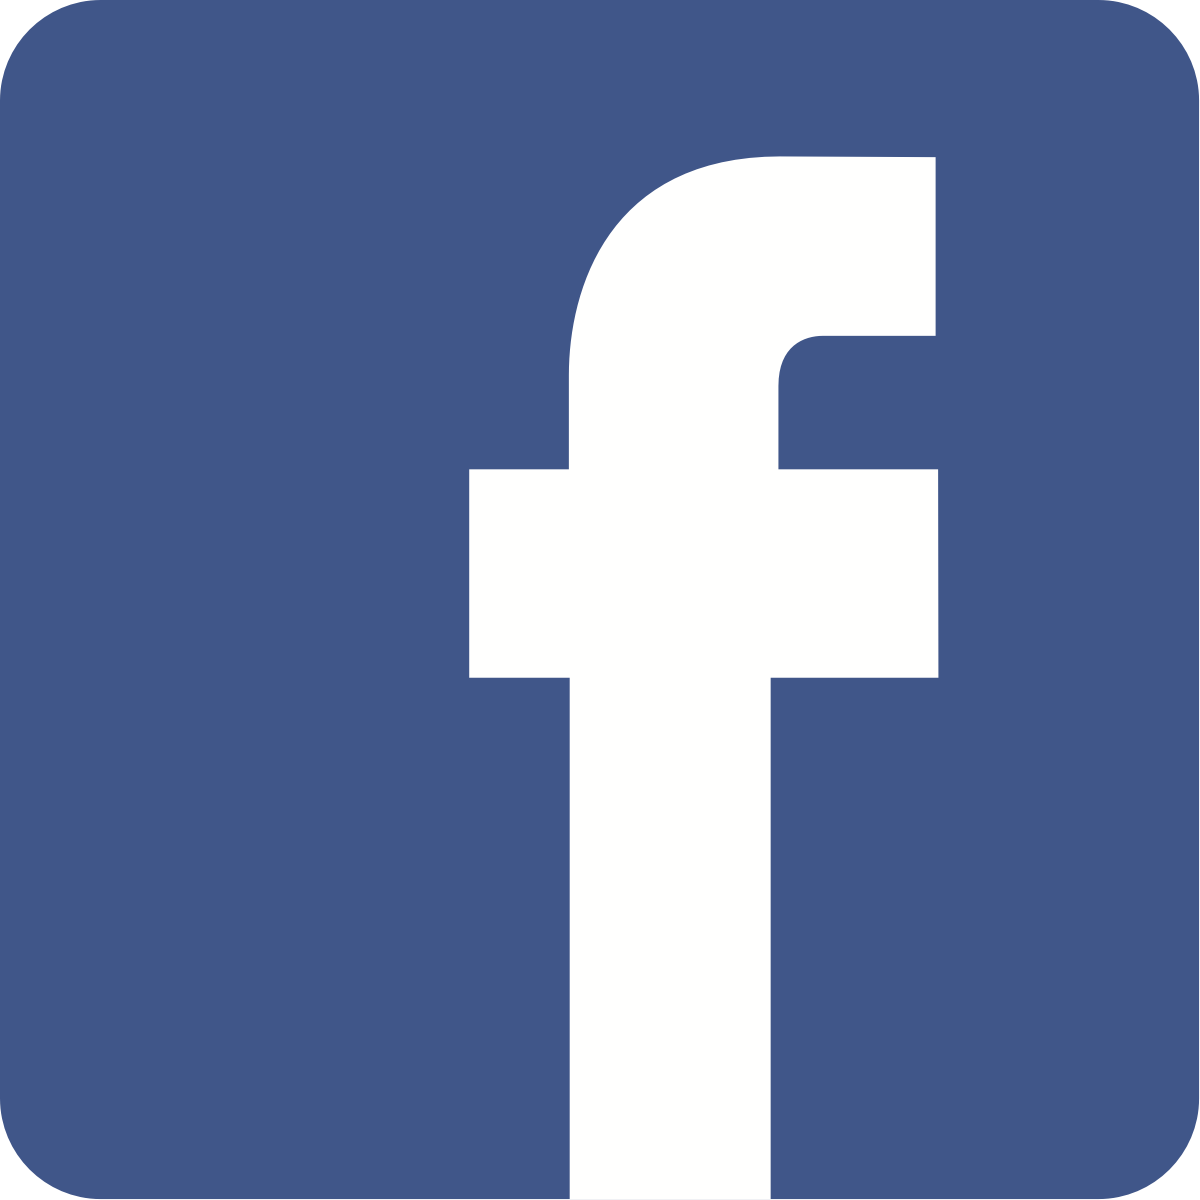 Фасебоок. Фейсбук. Facebook логотип. Пиктограмма Фейсбук. Facebook PNG без фона.